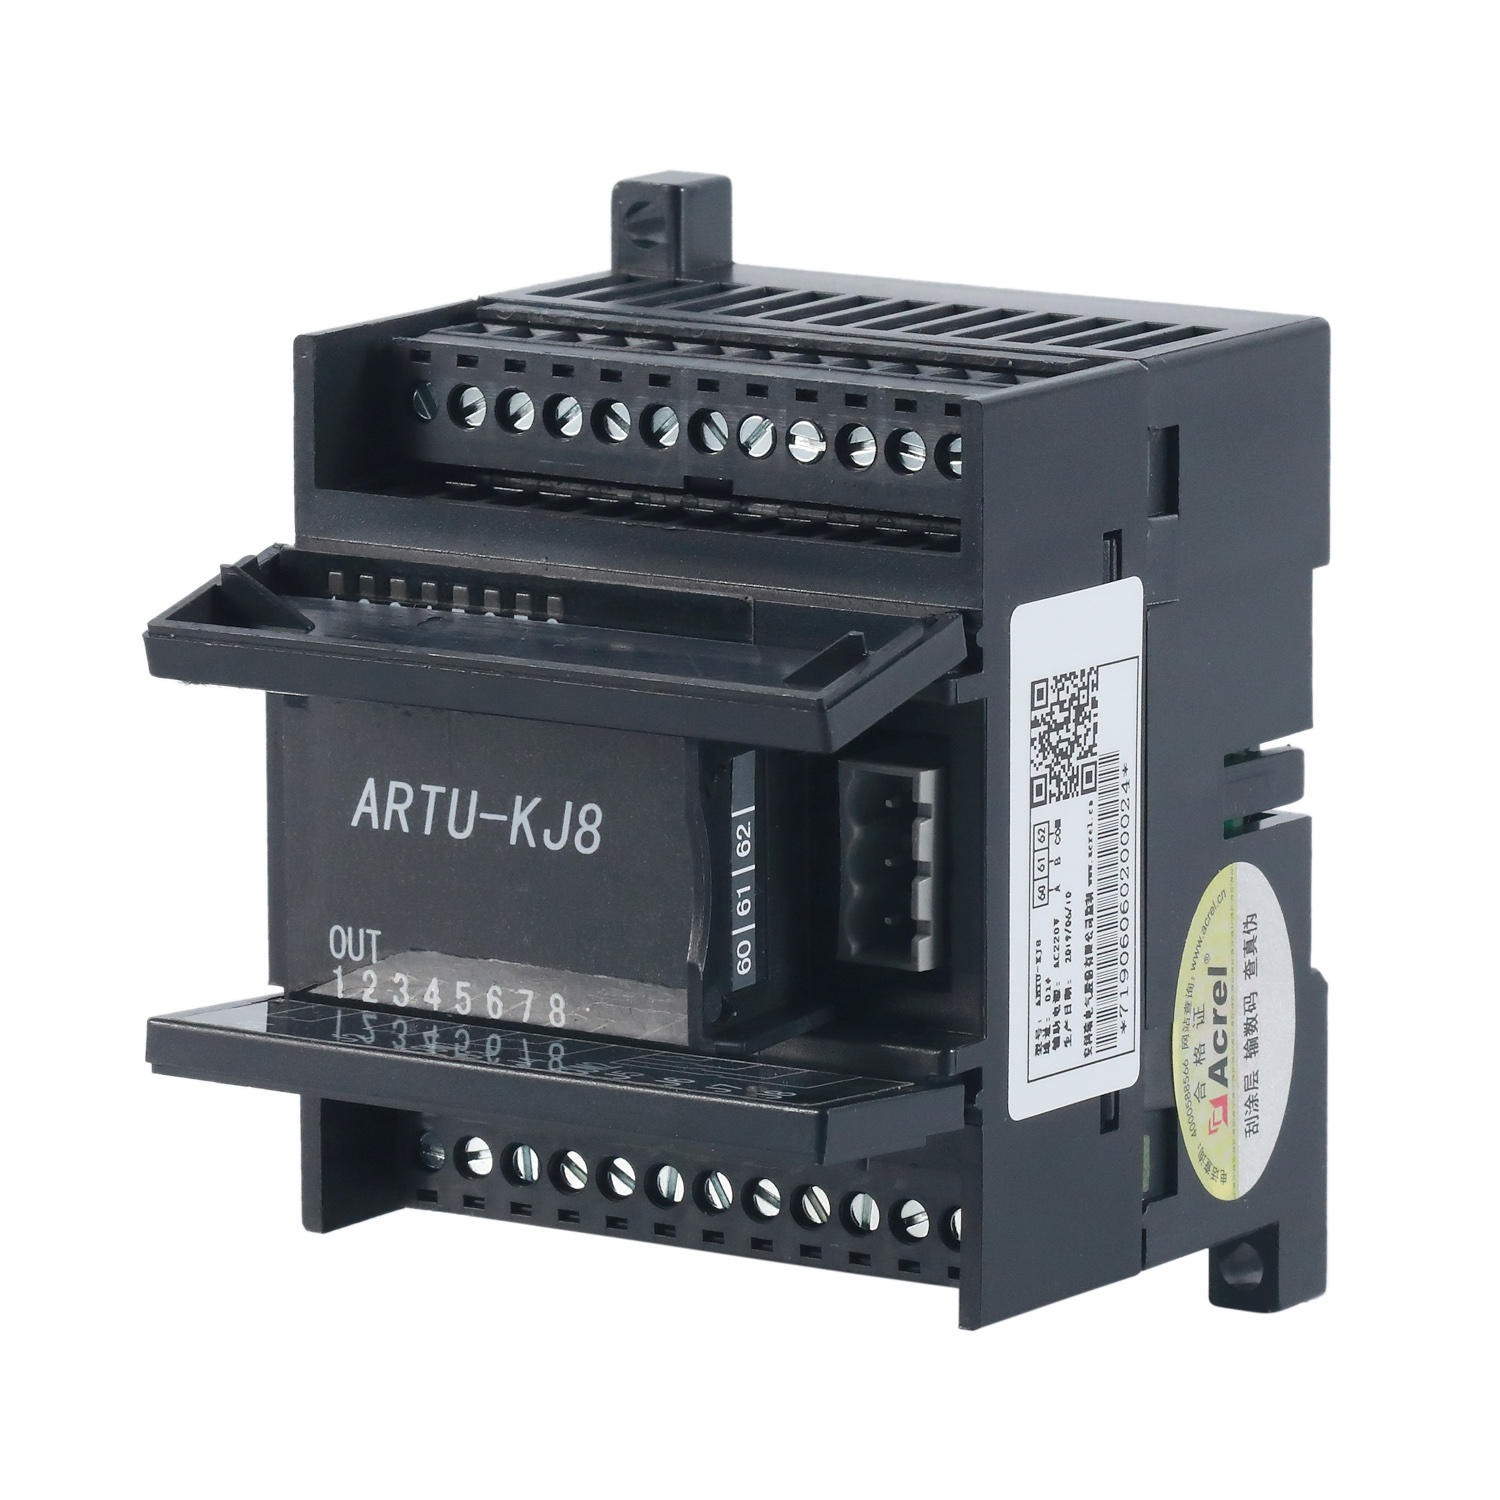 安科瑞 工业设备监测 现场信号控制 ARTU-KJ8 远端测控遥信单元组合